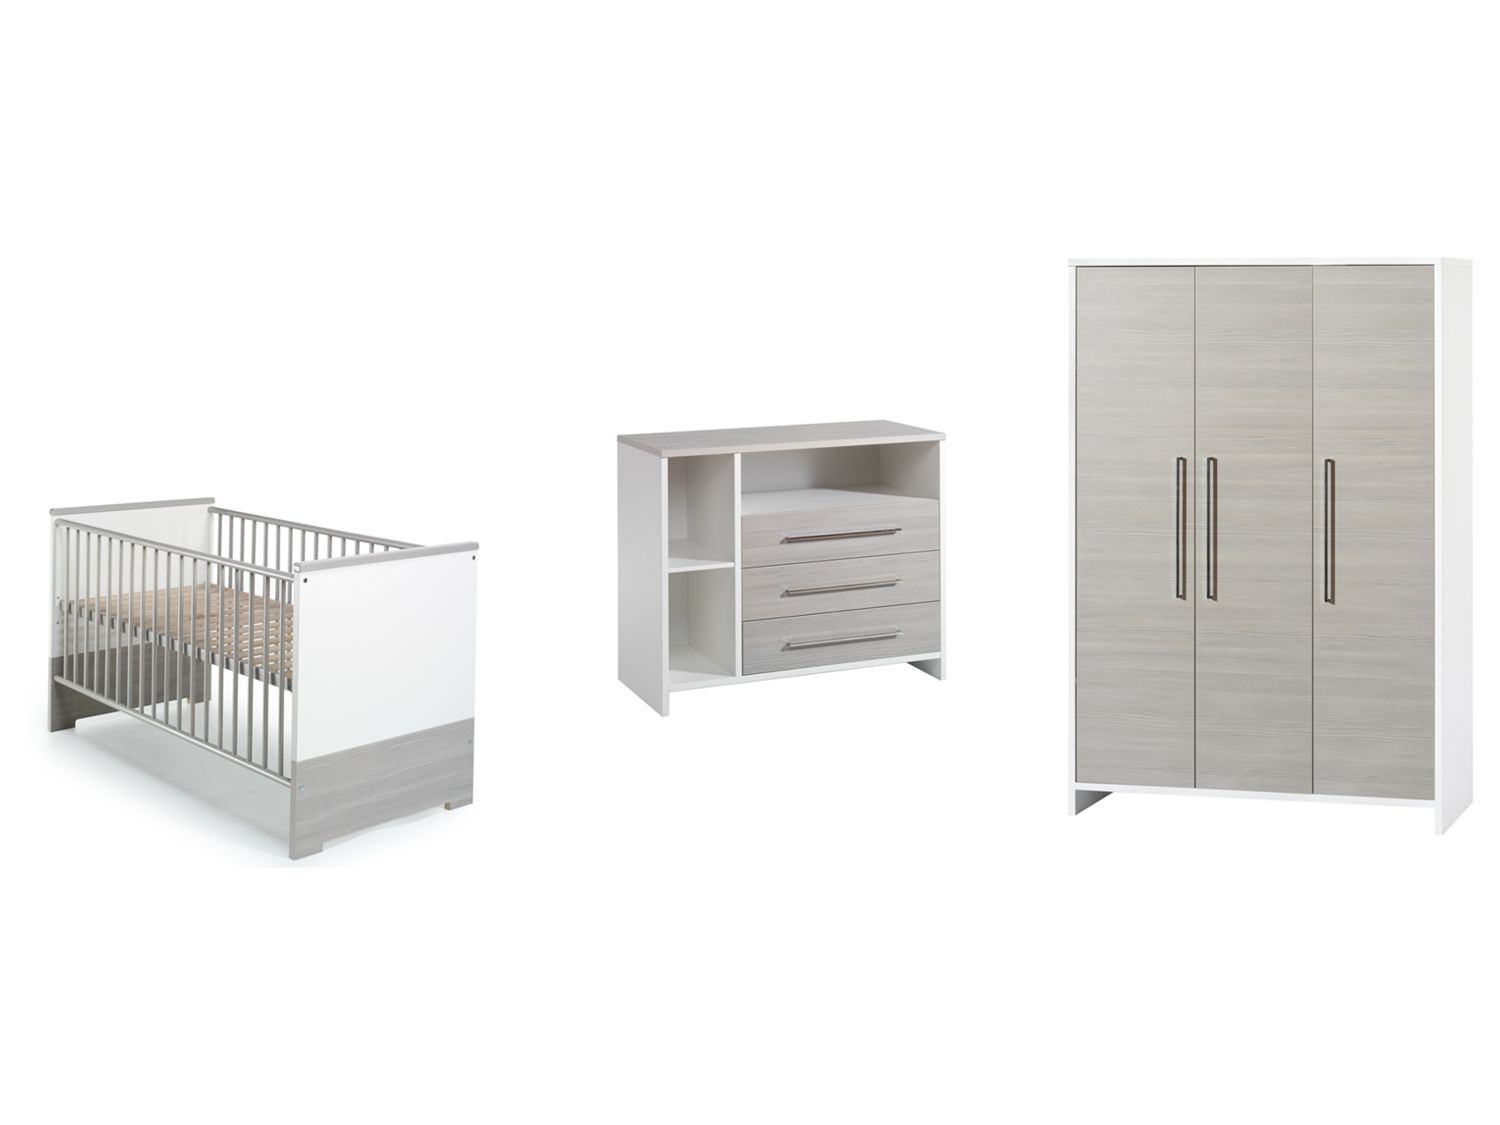 Chambres bébé – Schardt GmbH & Co. KG